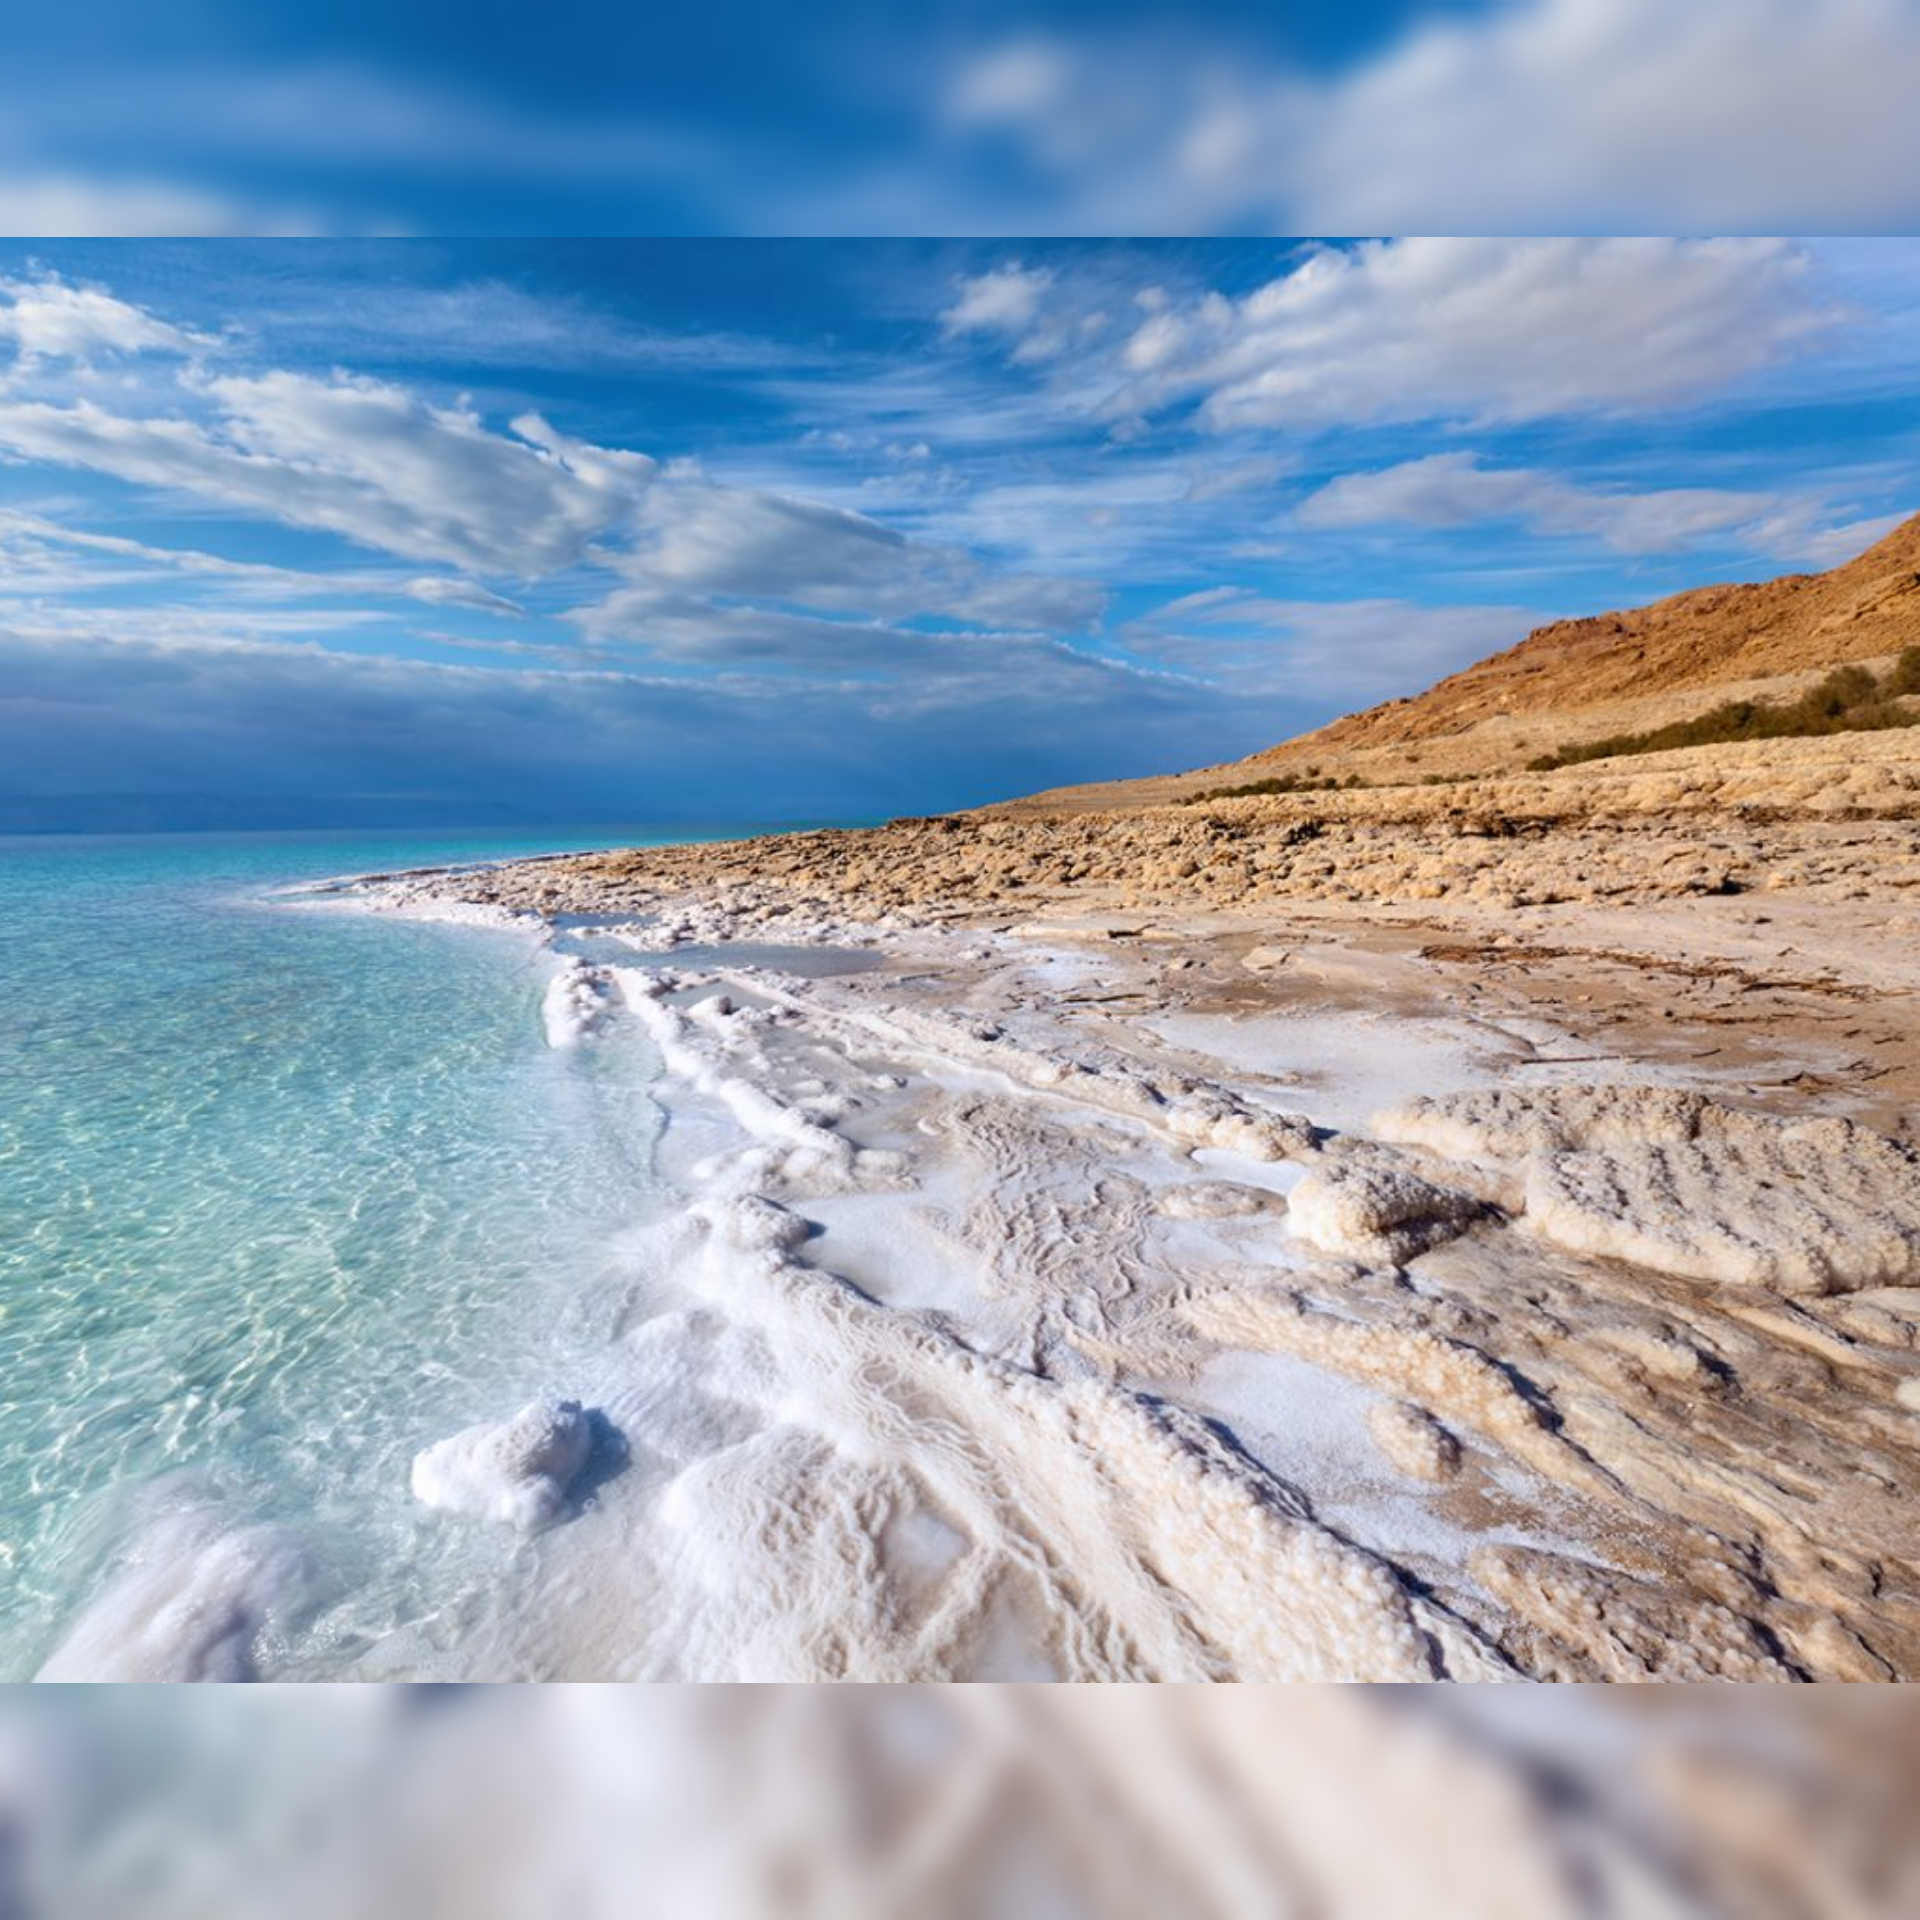 The Ultimate Dead Sea Travel Guide